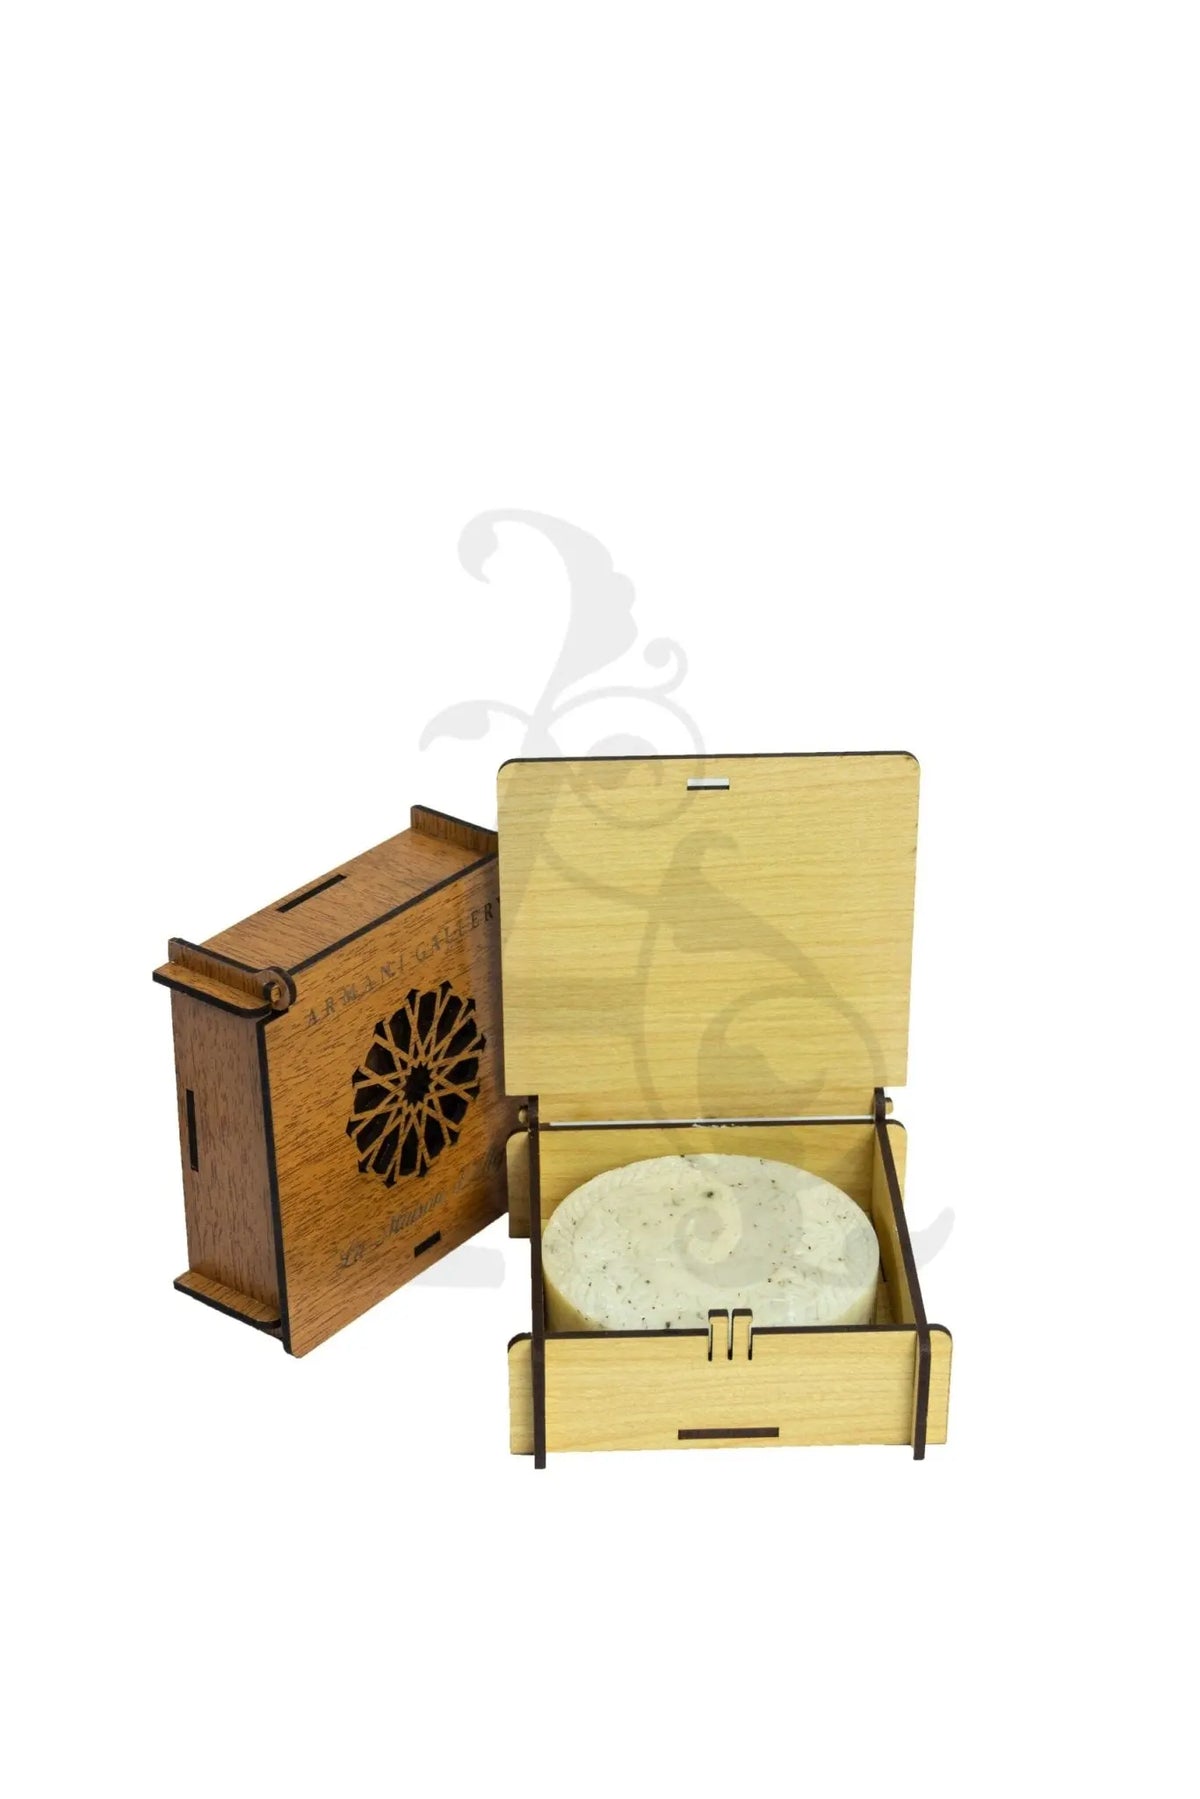 La Maison Natural Soap With Wooden Box - 1 Piece (White) - La Maison d'Alep